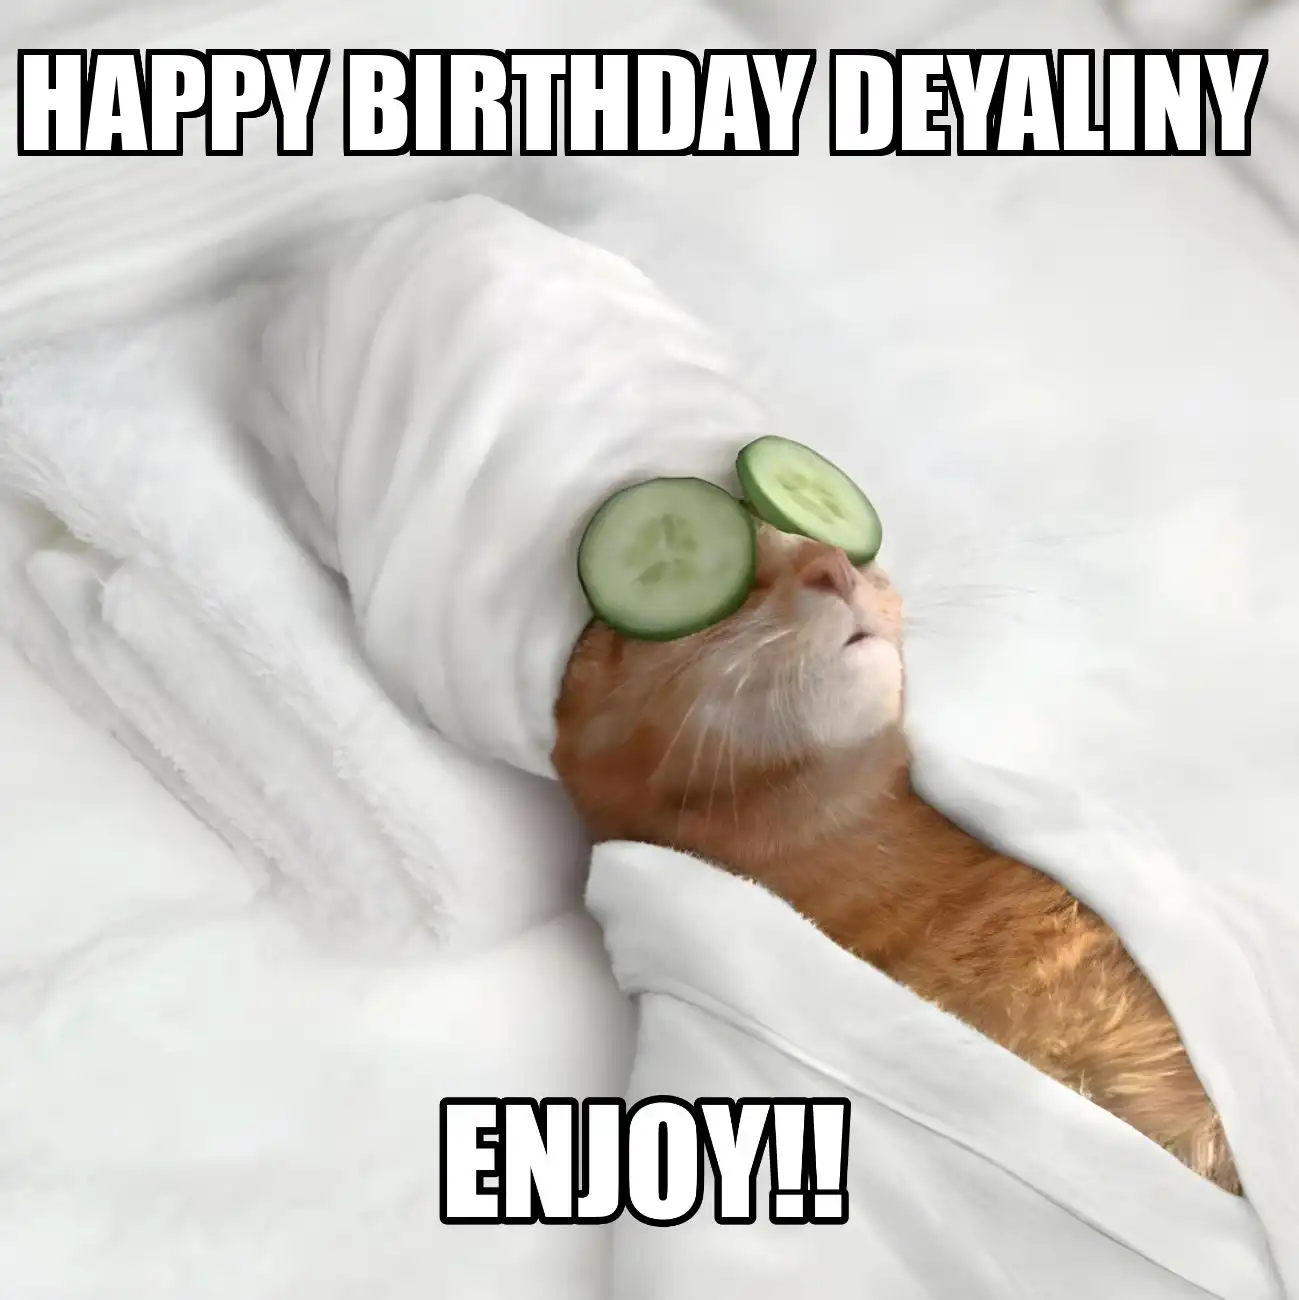 Happy Birthday Deyaliny Enjoy Cat Meme